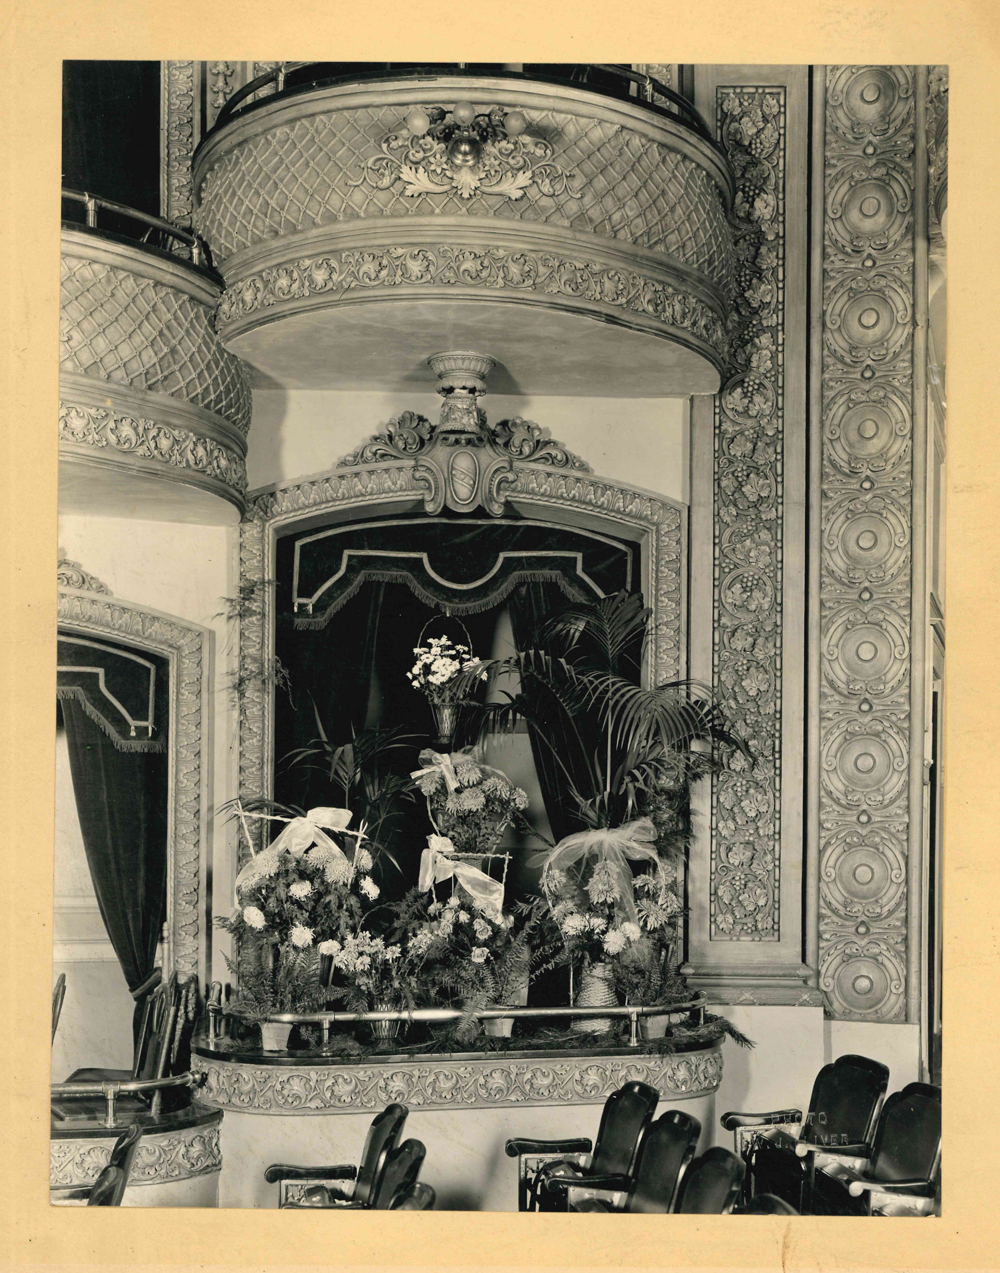 Photo de la loge des Lougheed au Grand Theatre, les fleurs et les couronnes donnant l’impression d’un décès dans la famille